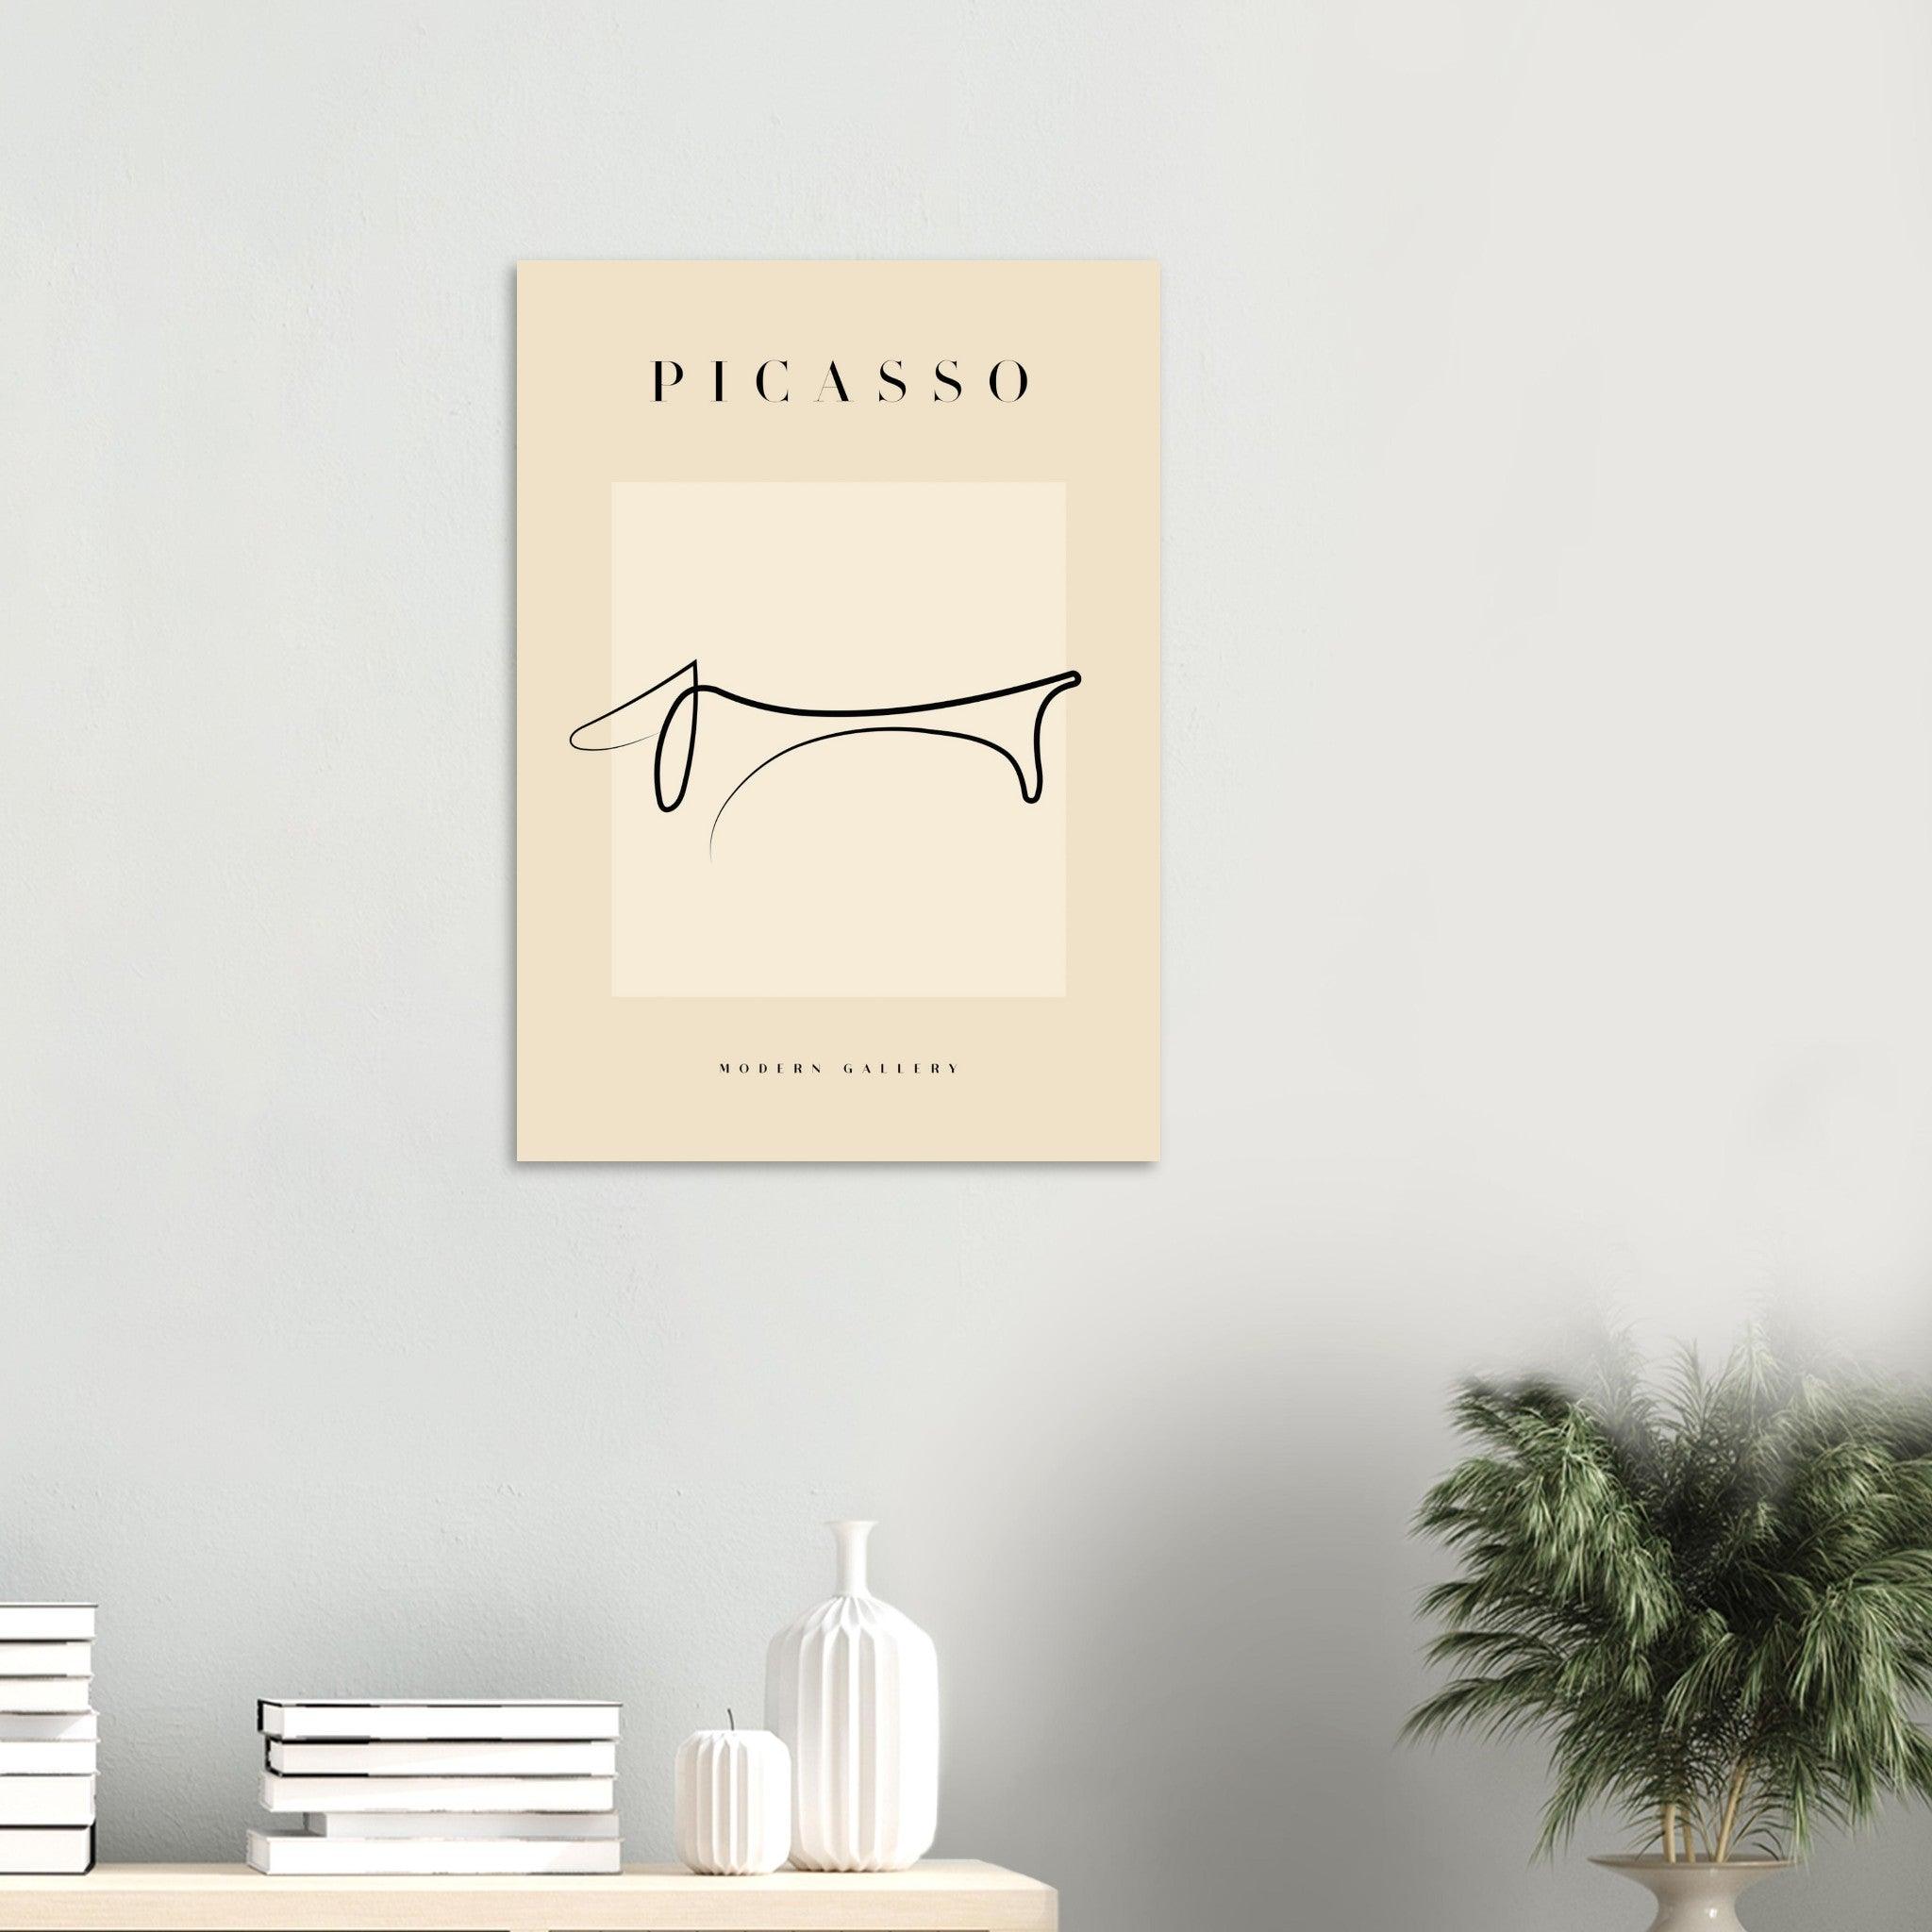 Picasso "Gravhund" - METALPOSTER